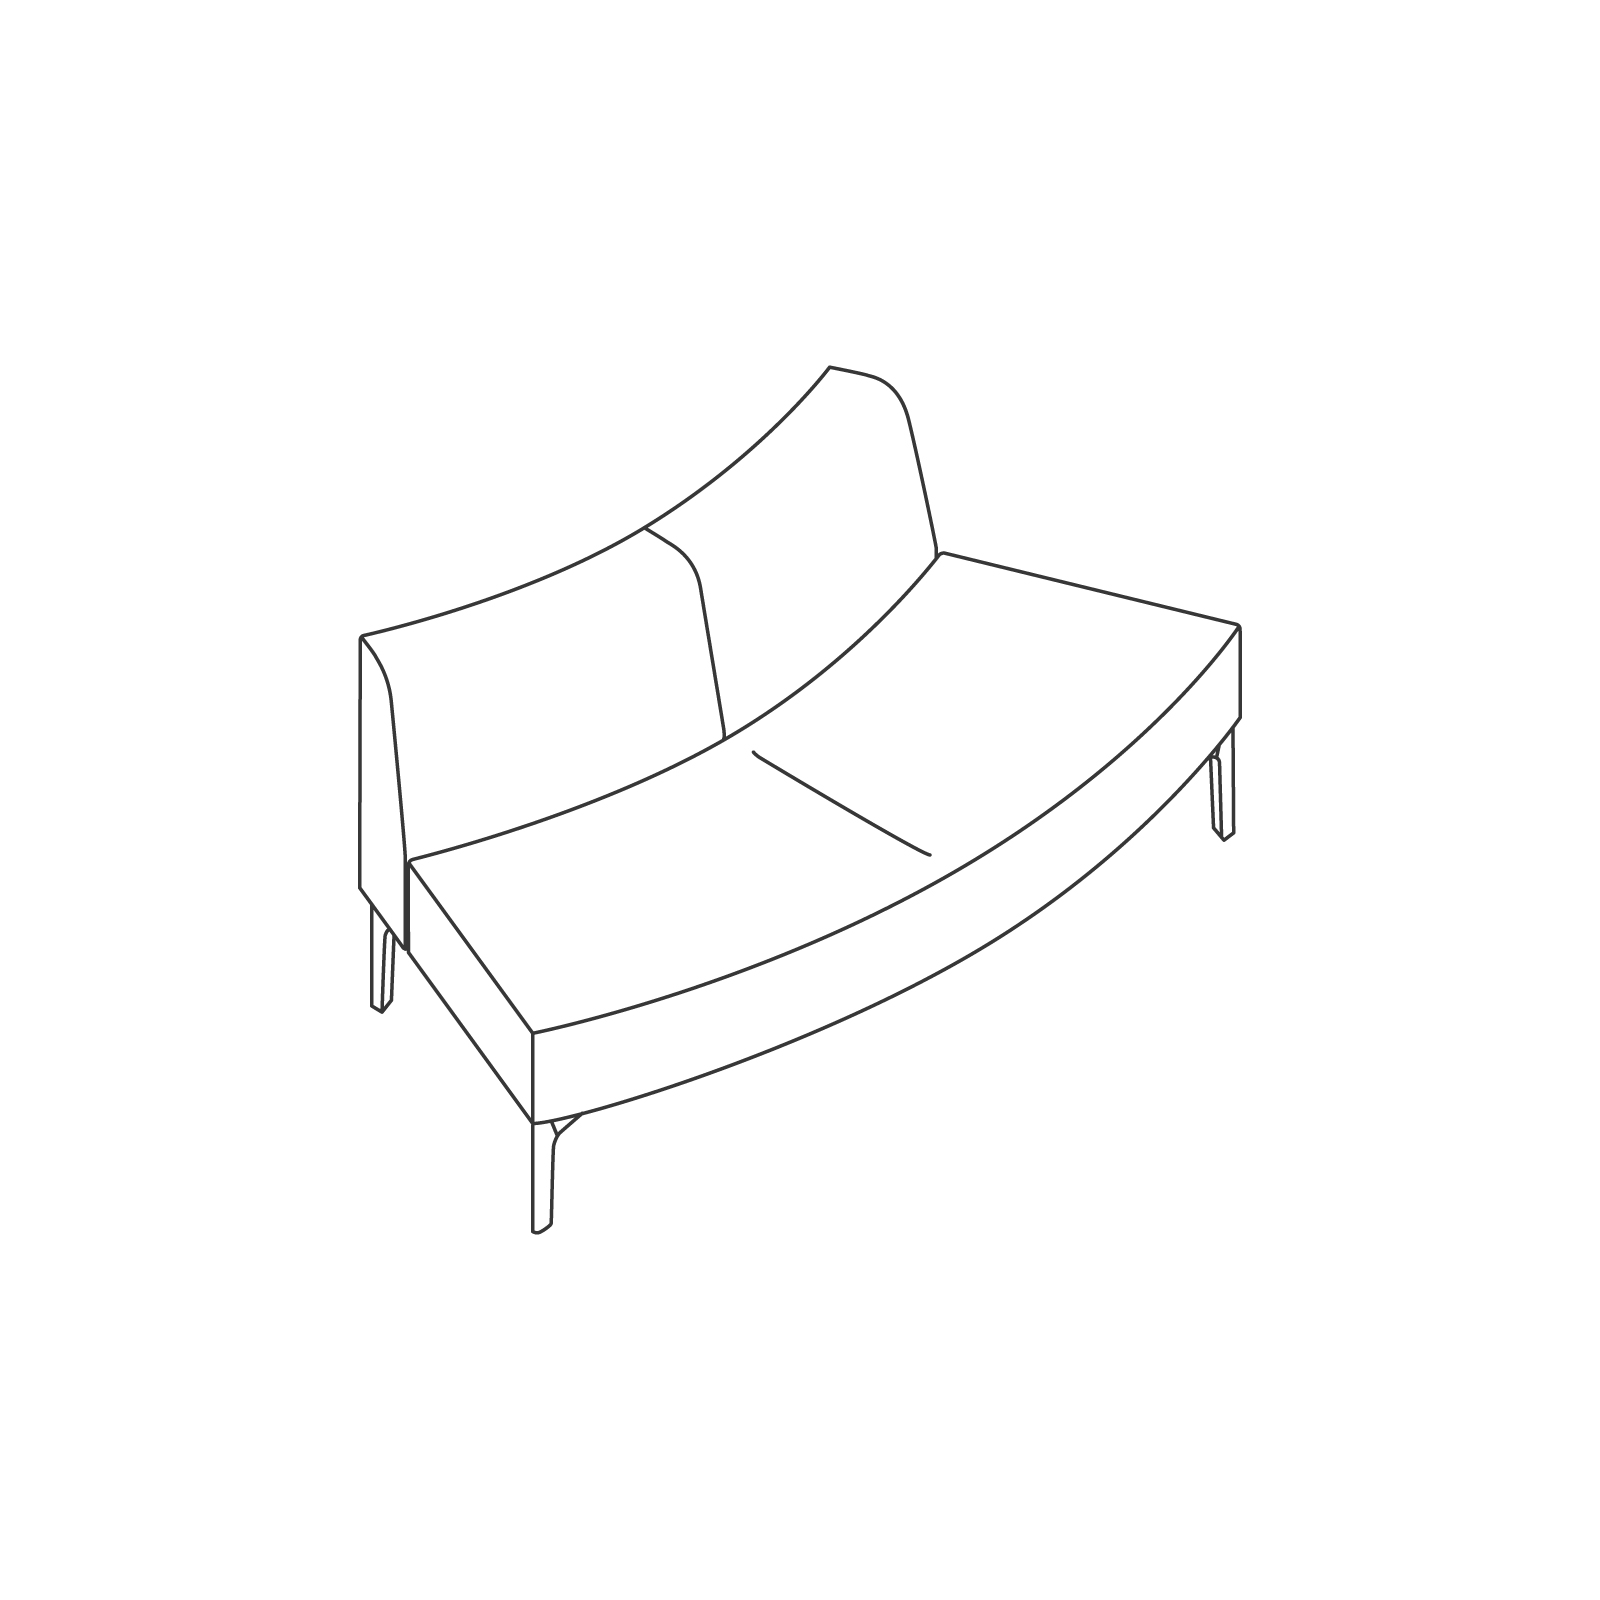 Een lijntekening - Symbol modulaire stoelen – buitenboog 45 graden